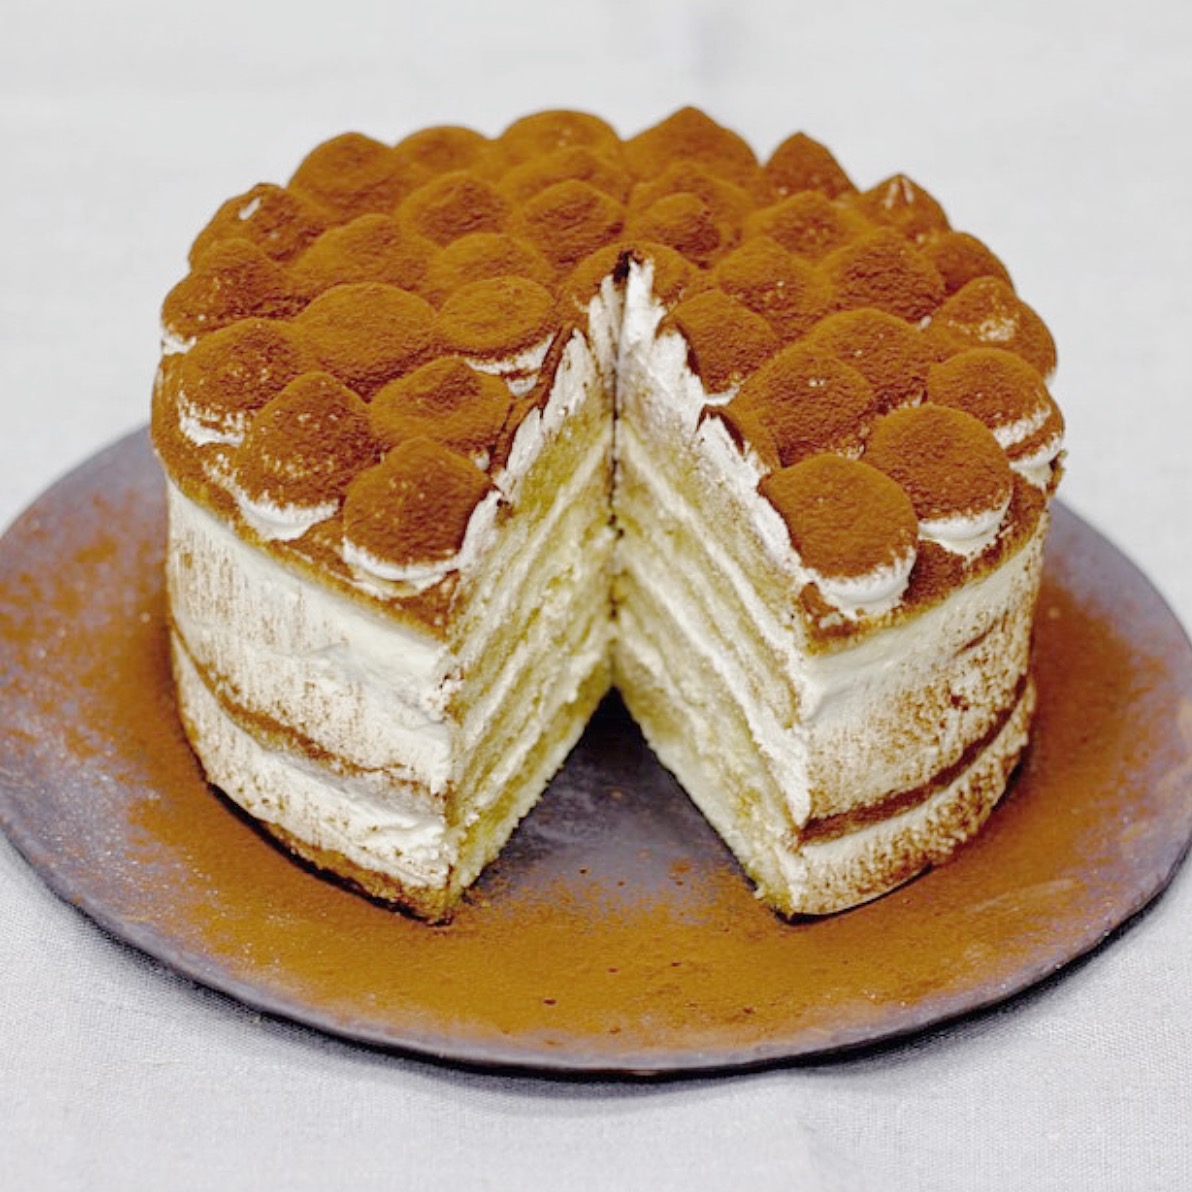 cakes  buttercream perth cake categories tiramisu  birthday cakes baking tiramisu tags cake